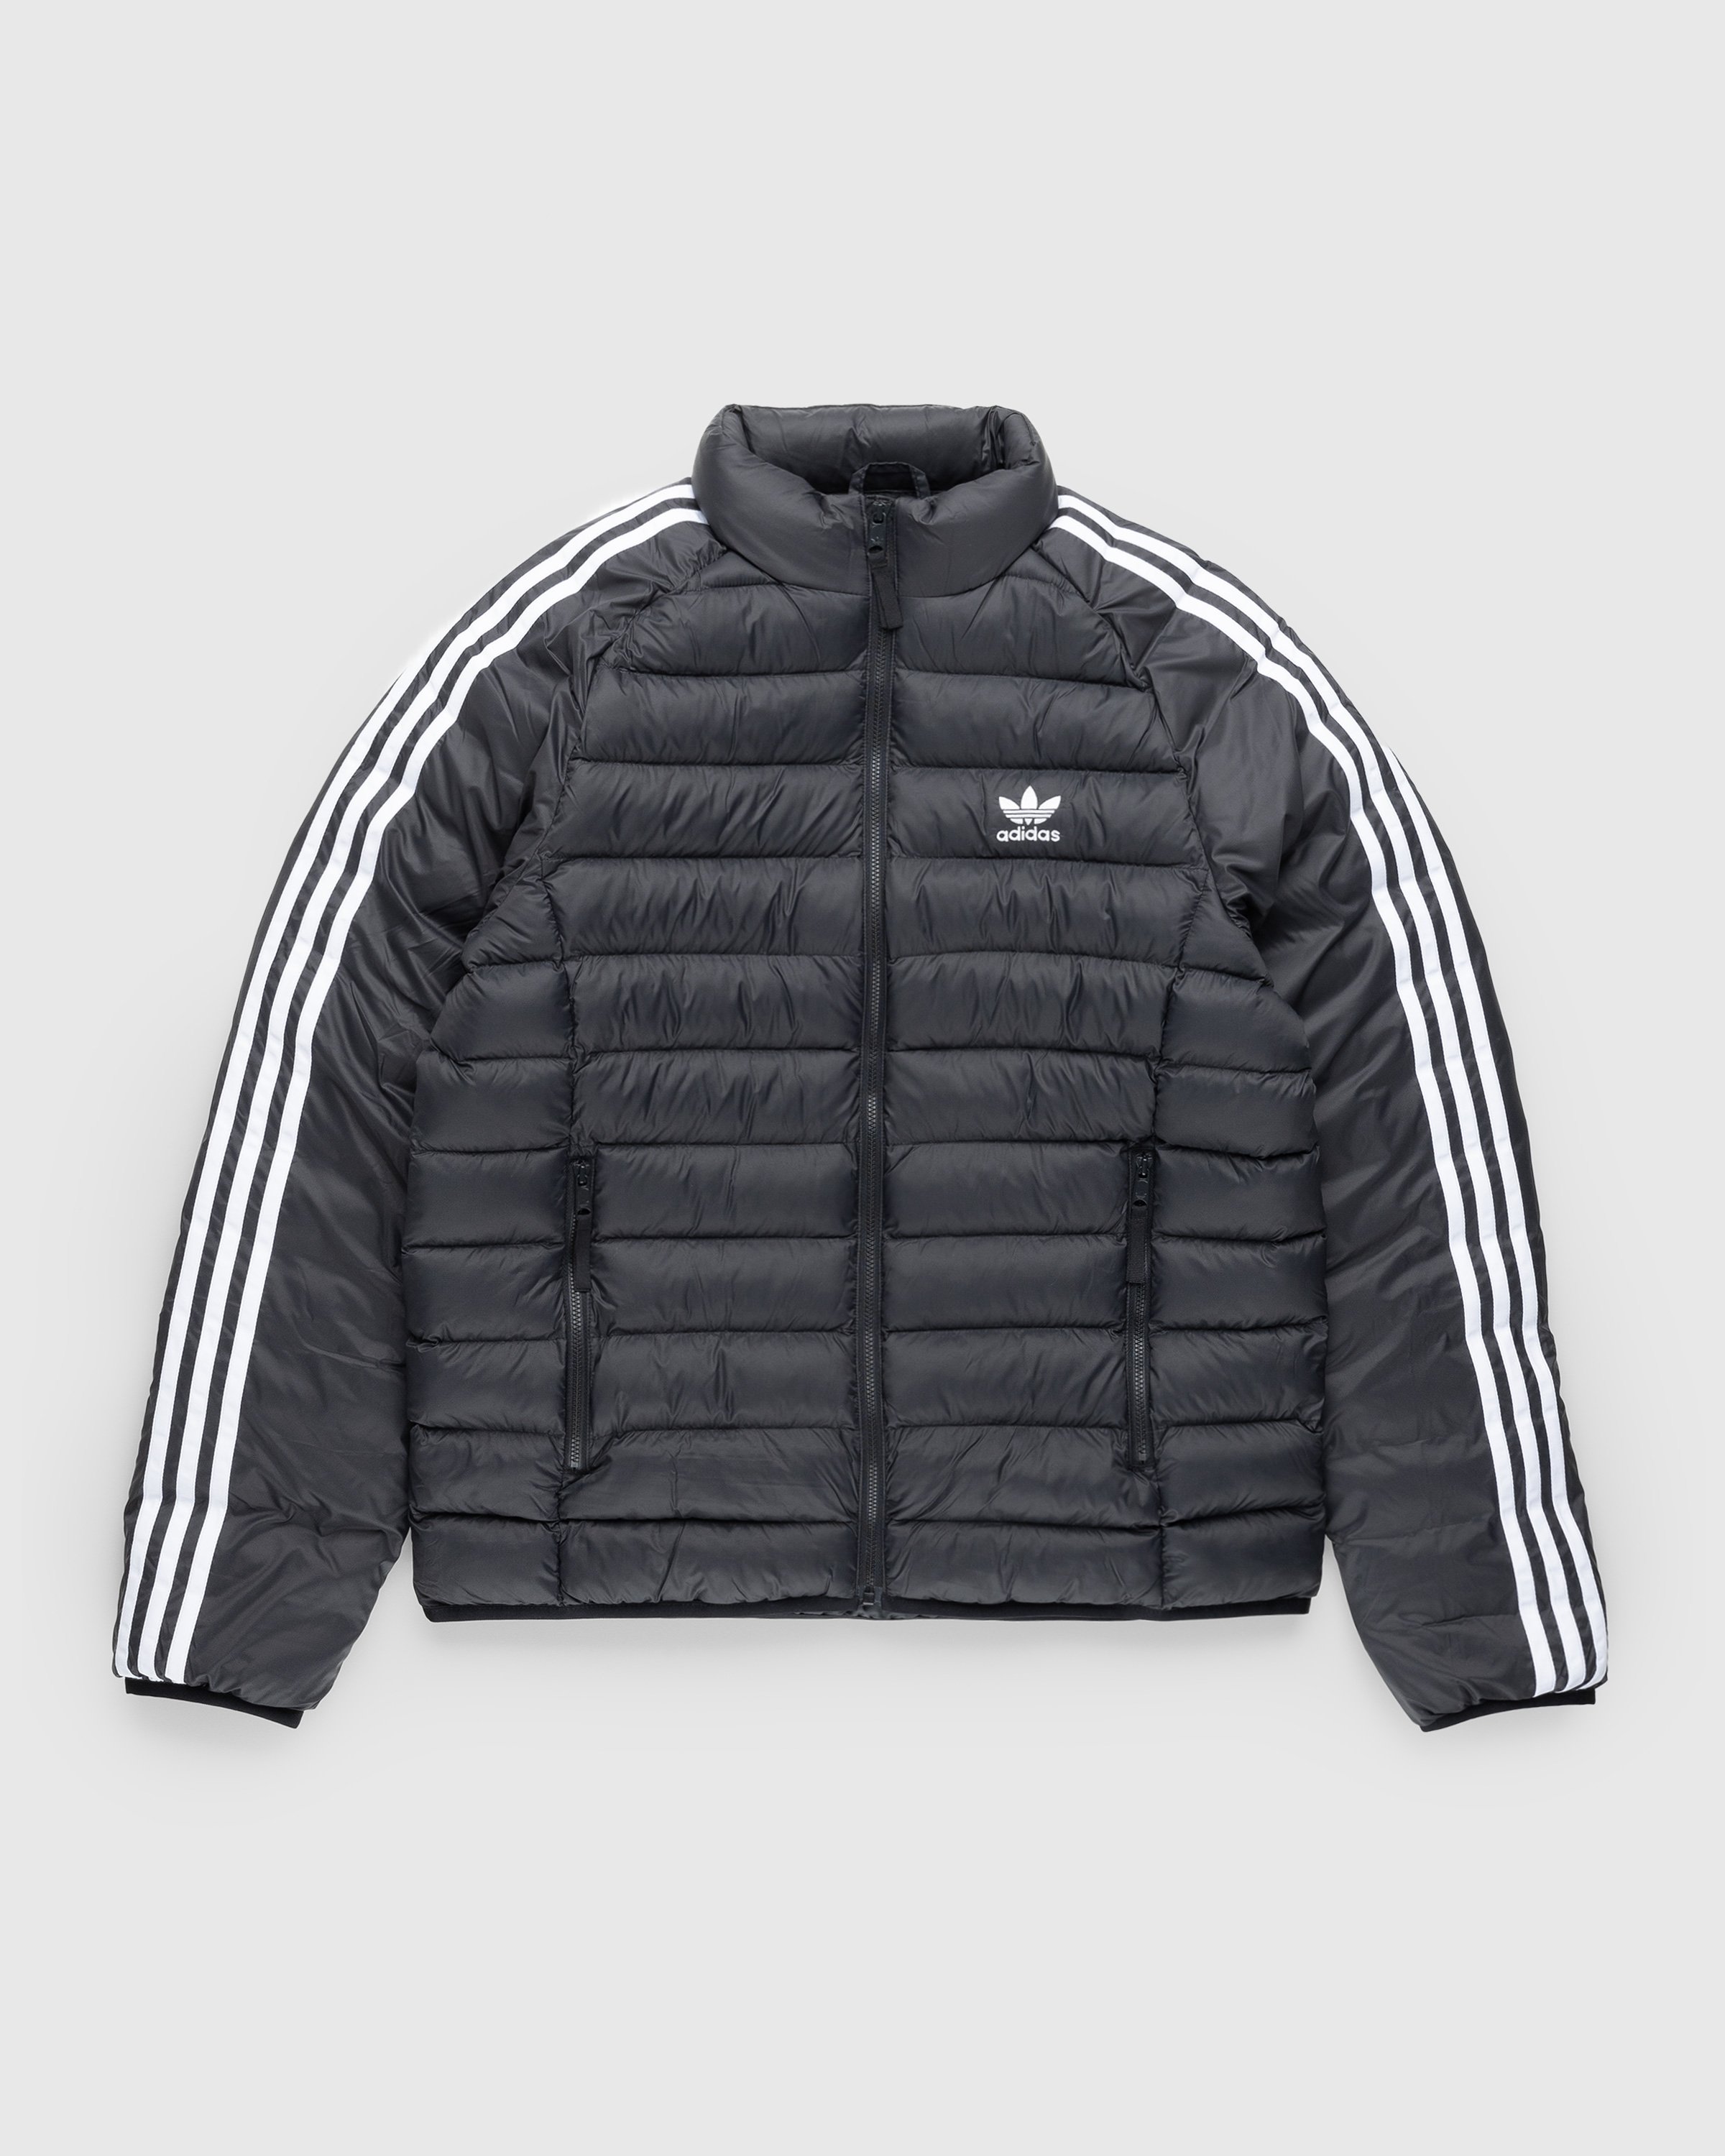 Adidas - Padded Jacket Black - Clothing - Black - Image 1